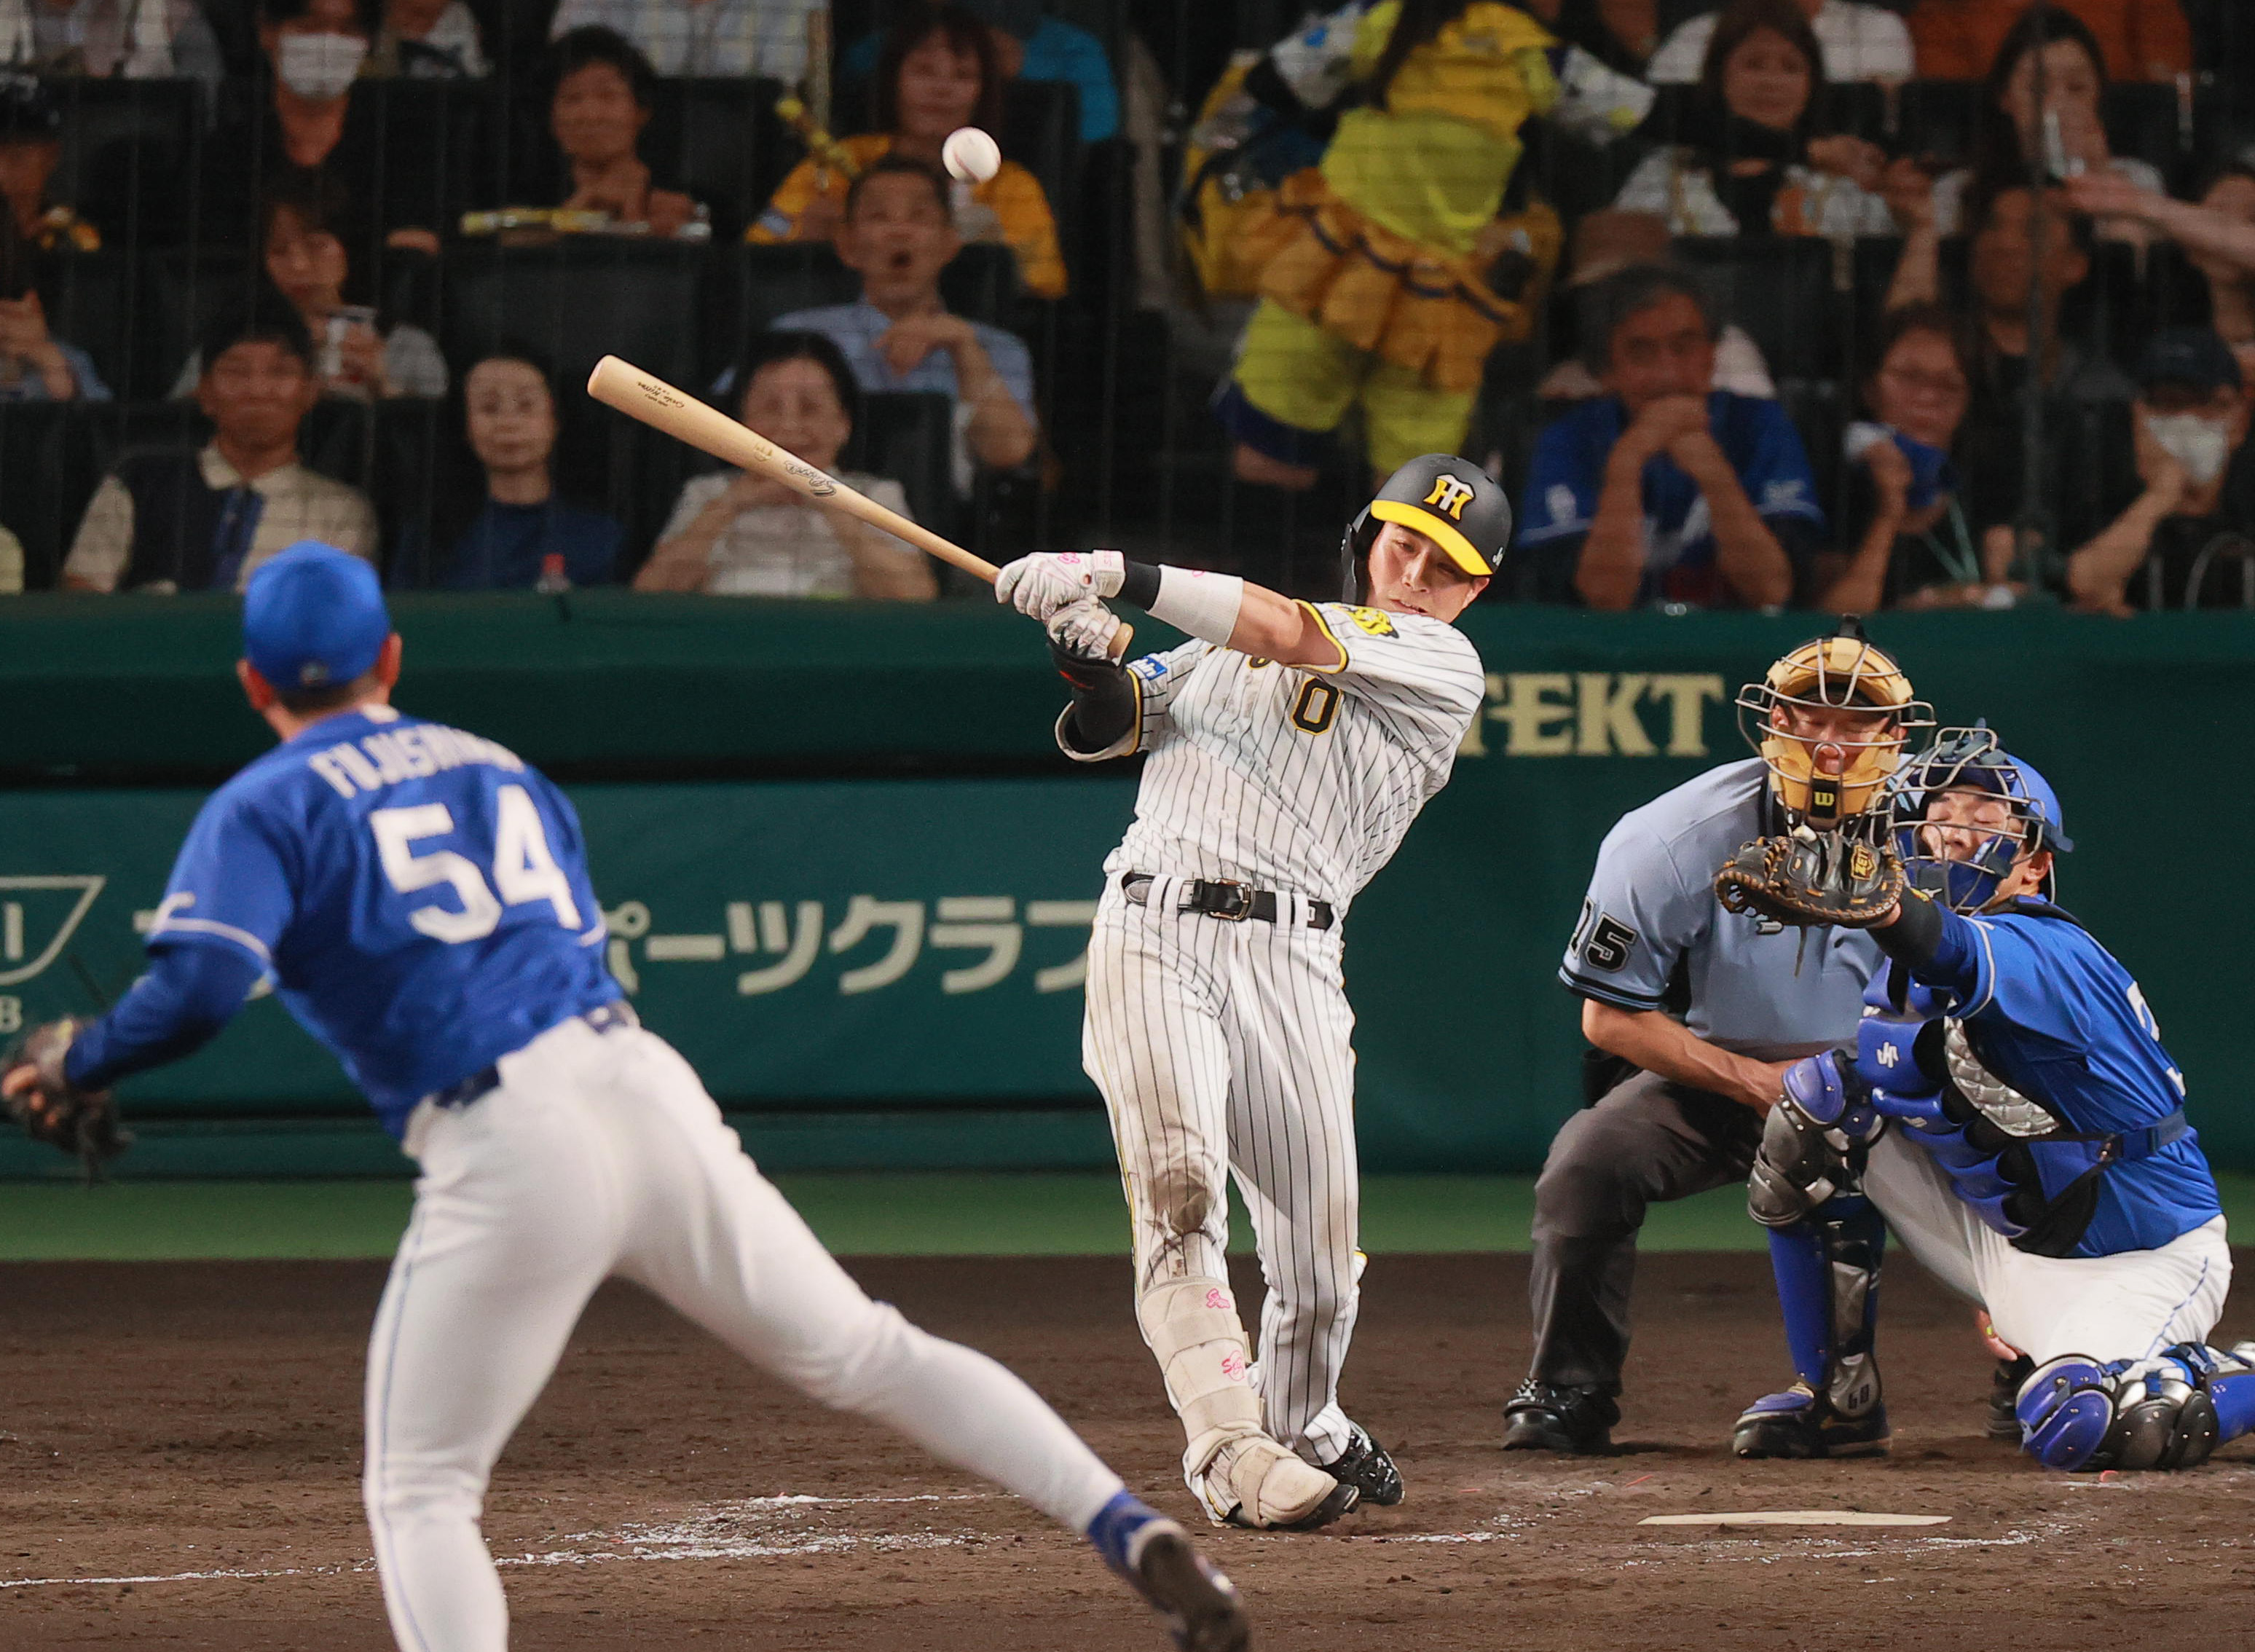 【最安値得価】阪神 vs DeNA 6月25日金曜日 レフト外野シートペア 野球